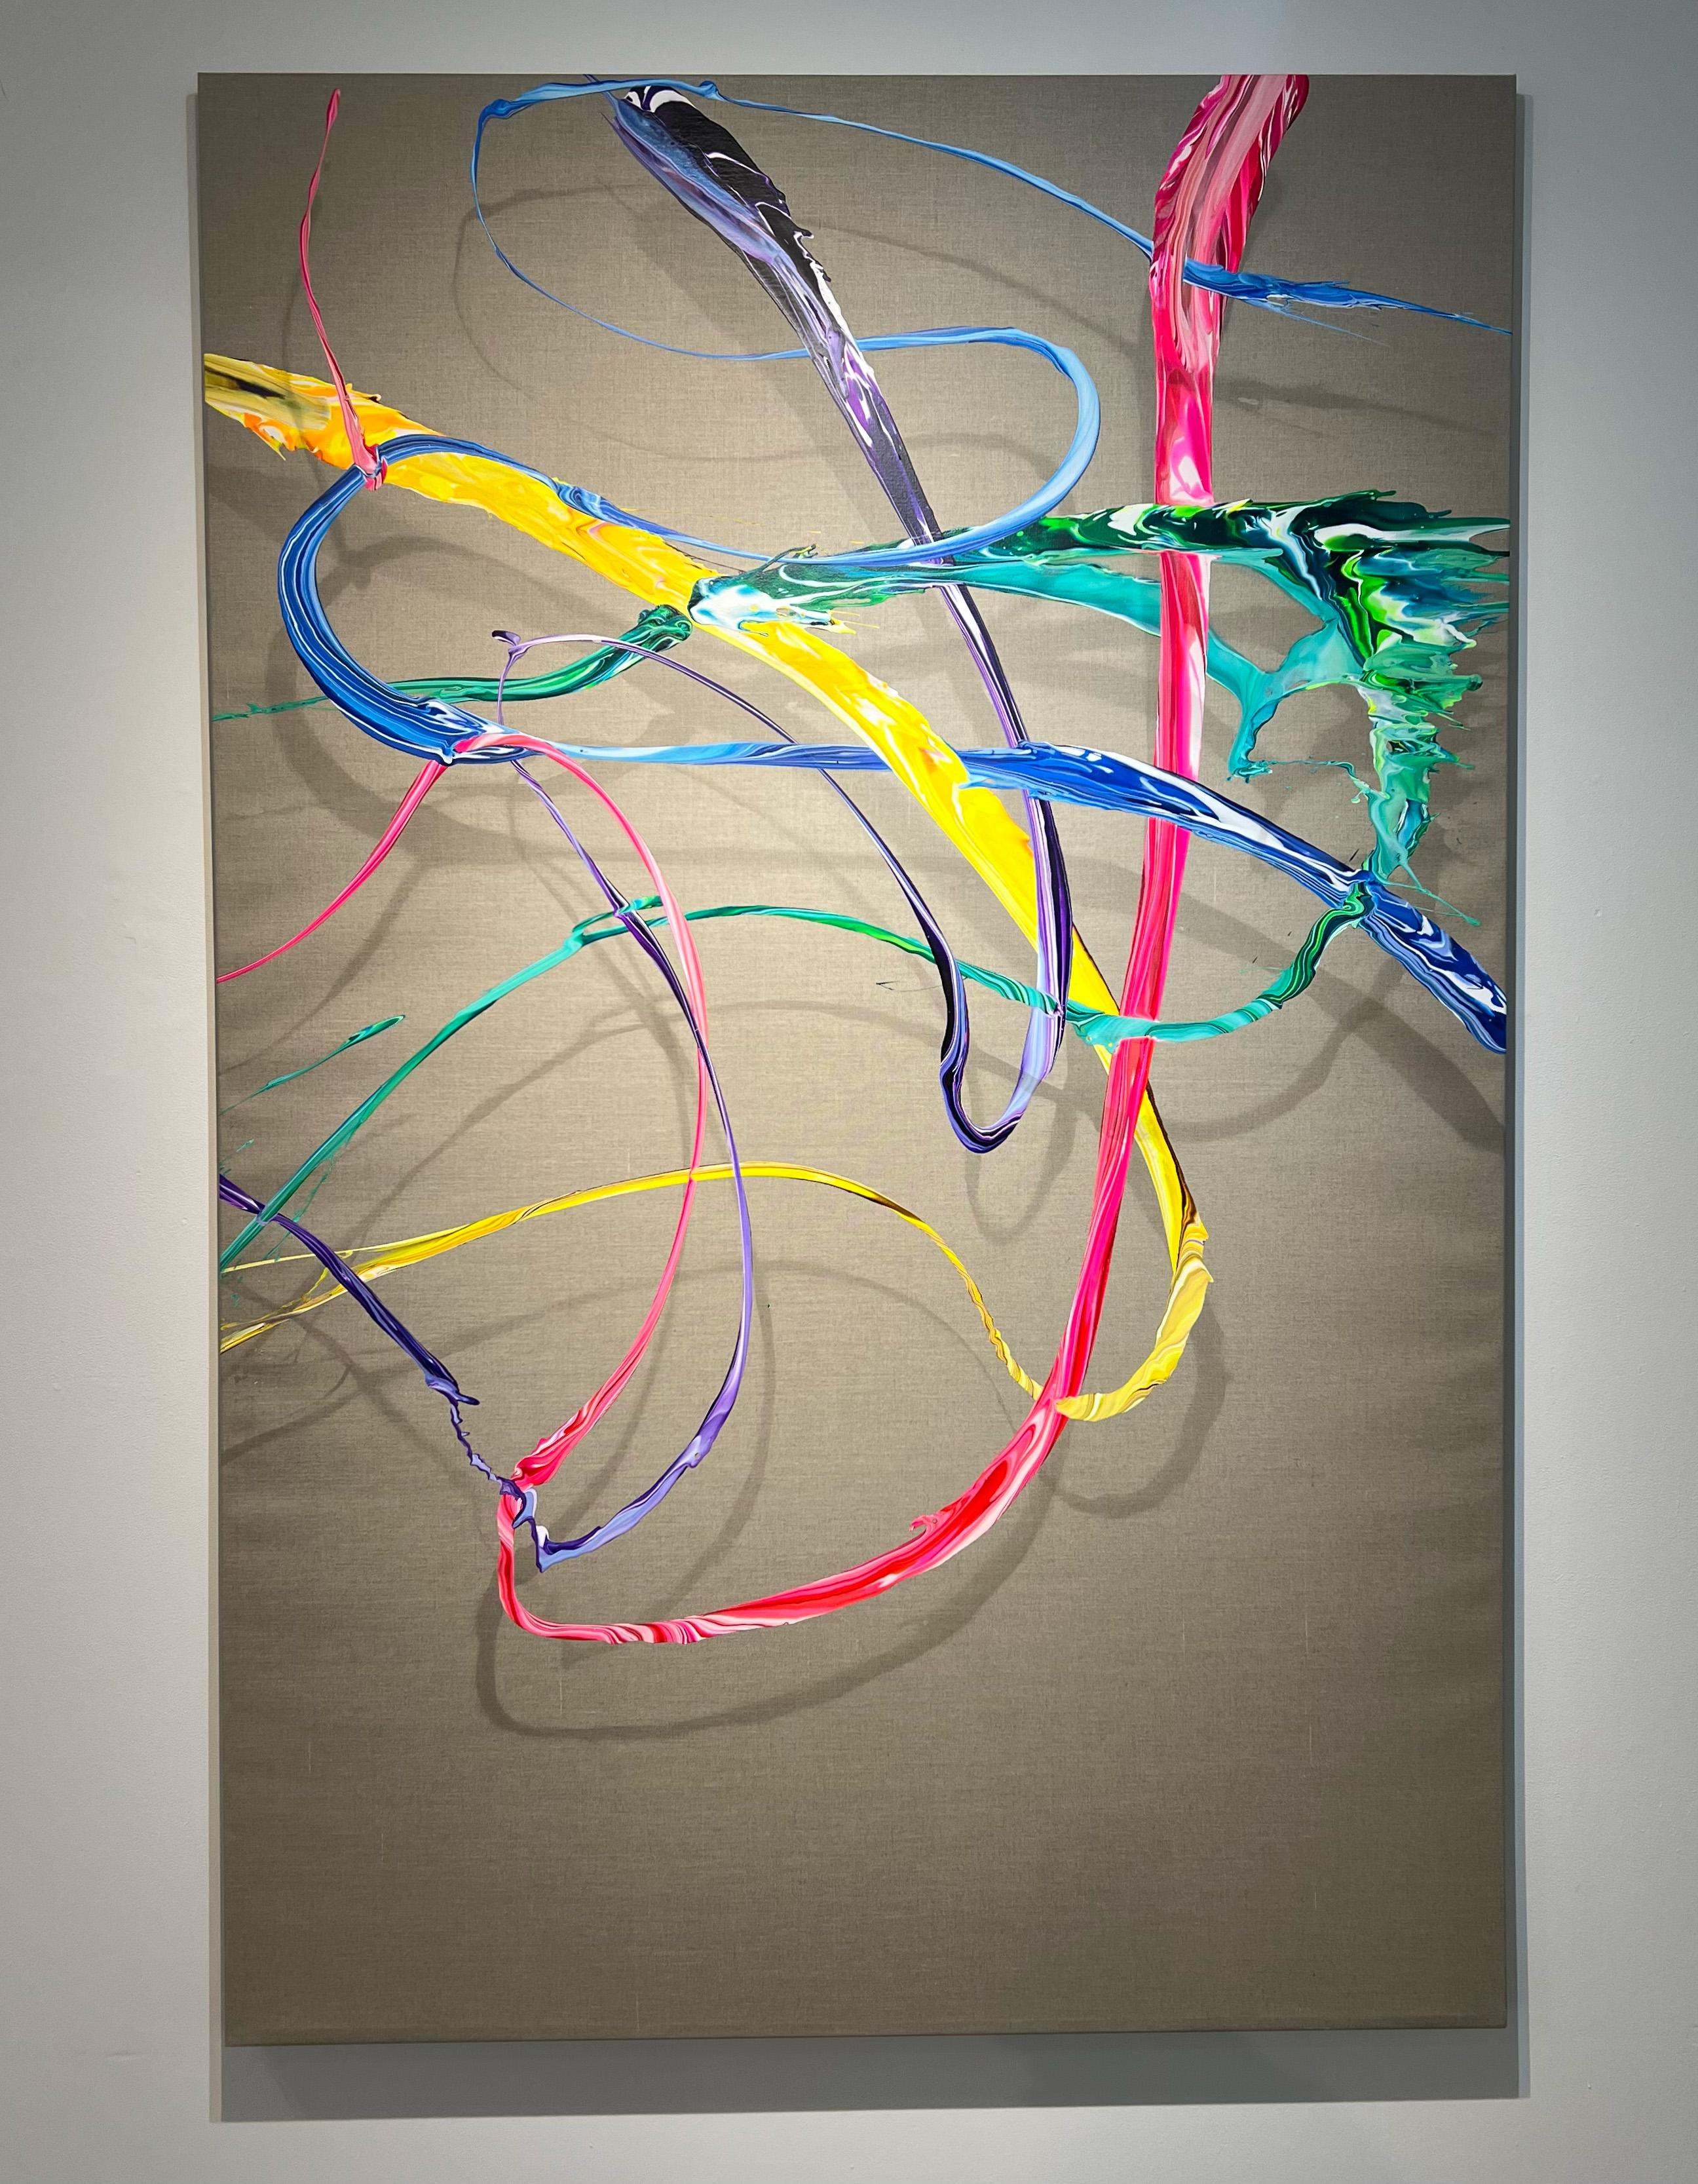 AV 888 – Eine fließende Abstraktion in Lila, Rosa, Gelb, Blau und Grün – Painting von Alex Voinea